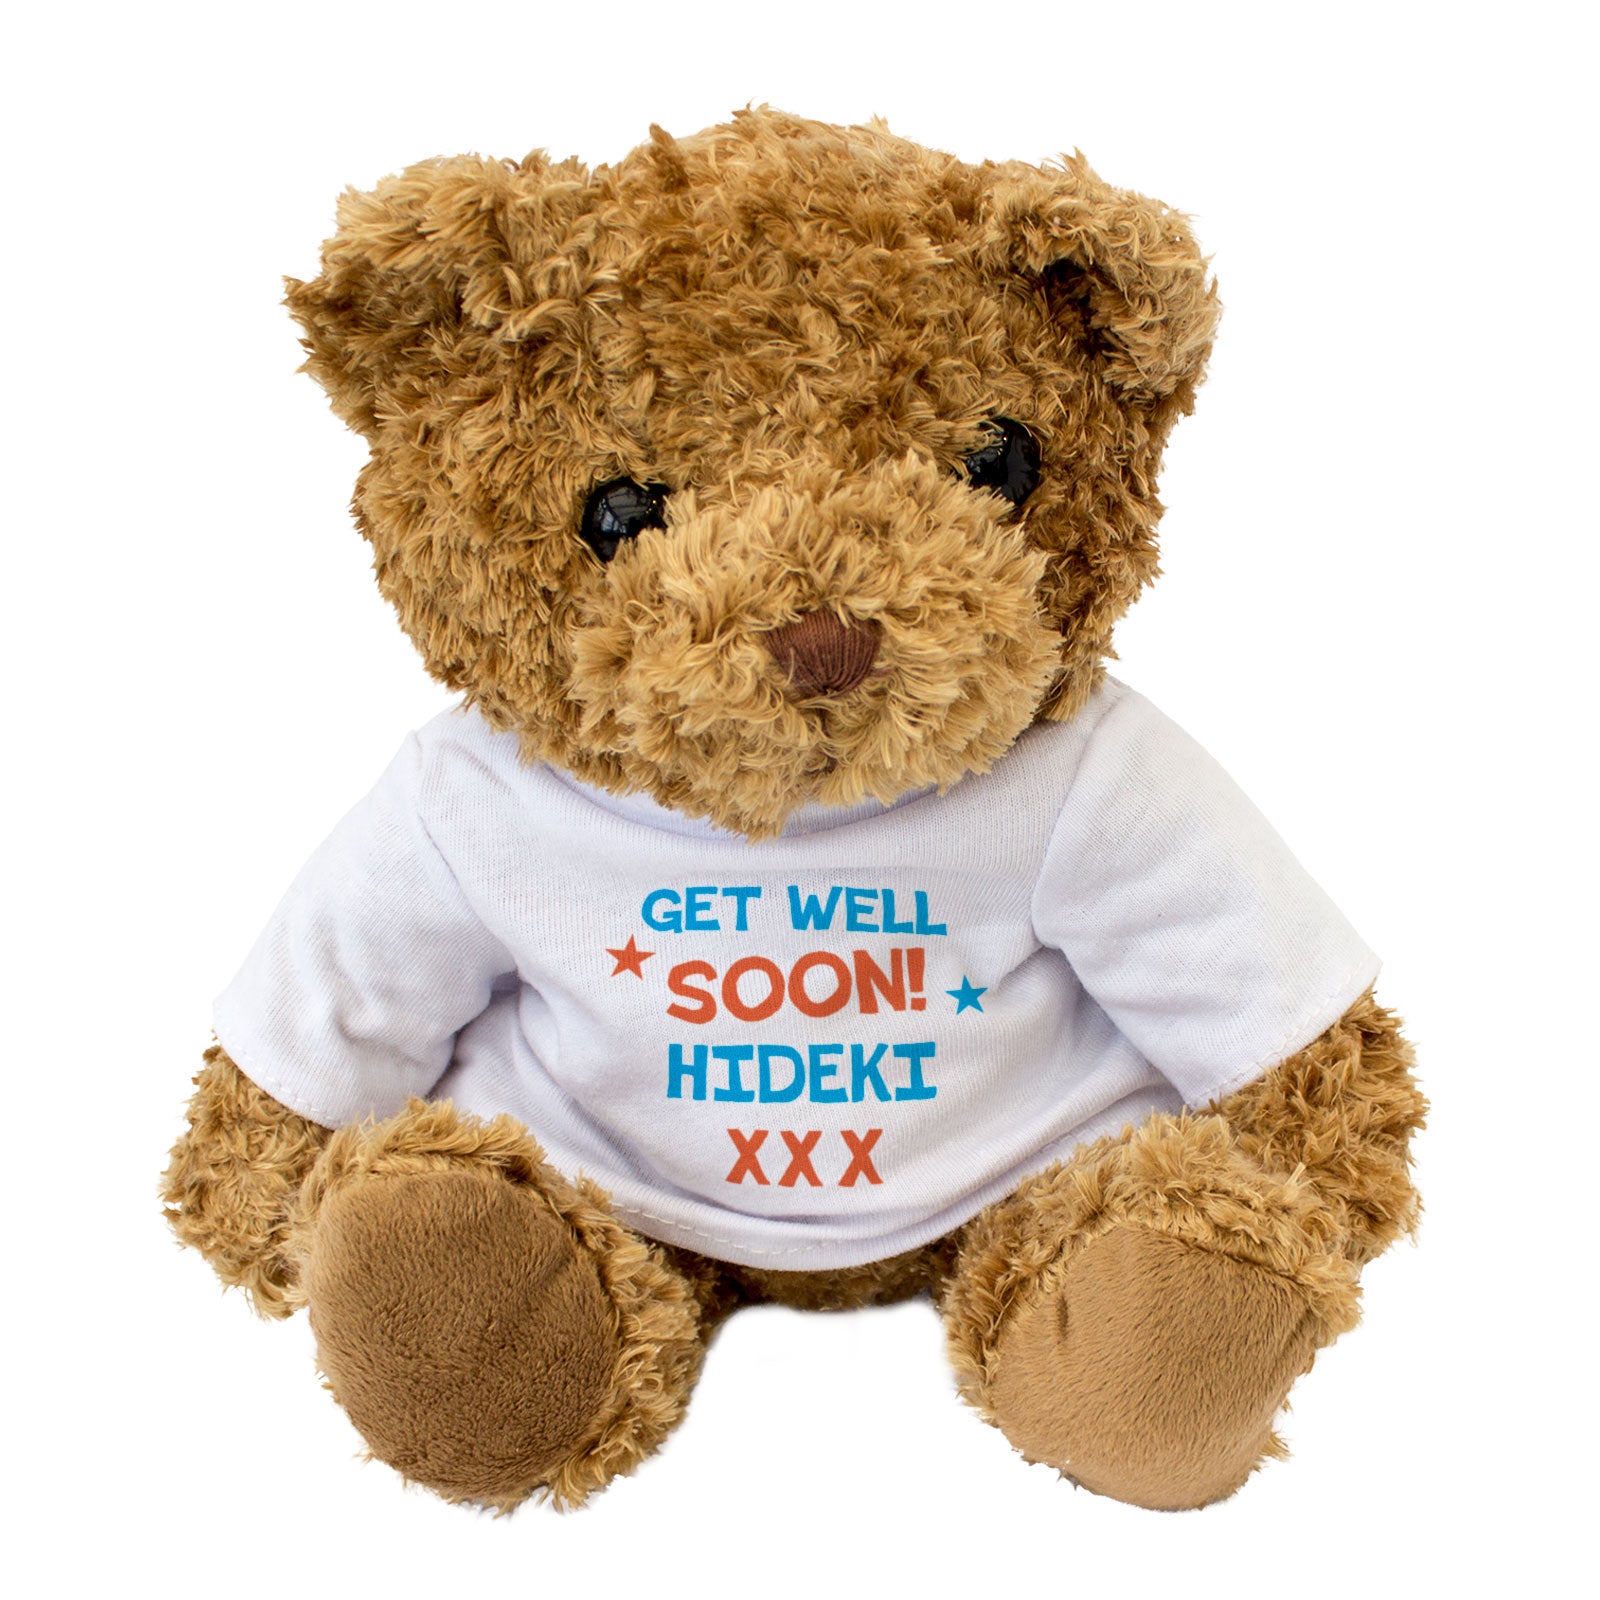 Get Well Soon Hideki - Teddy Bear